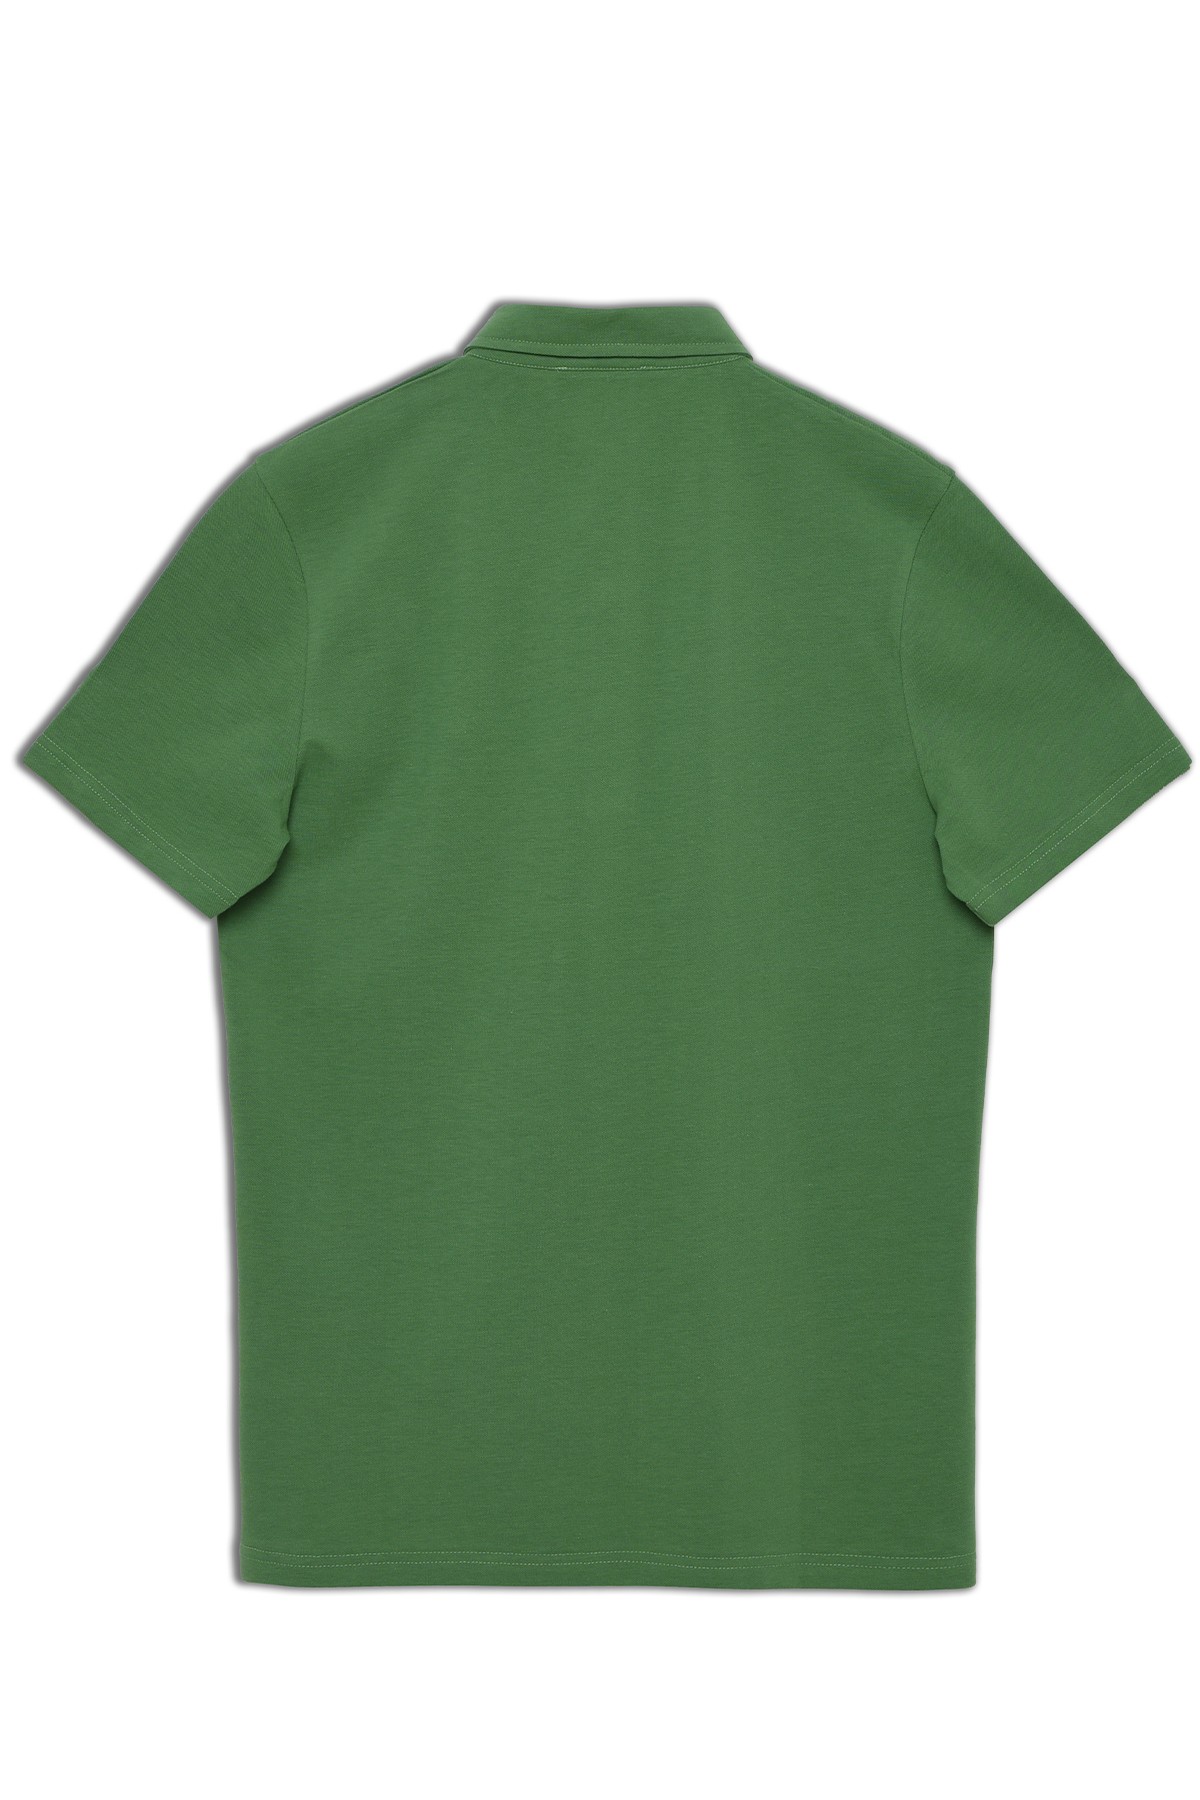 Vav Tasarım Punto Baskılı Pamuk Polo Yaka Yeşil T-shirt 23'